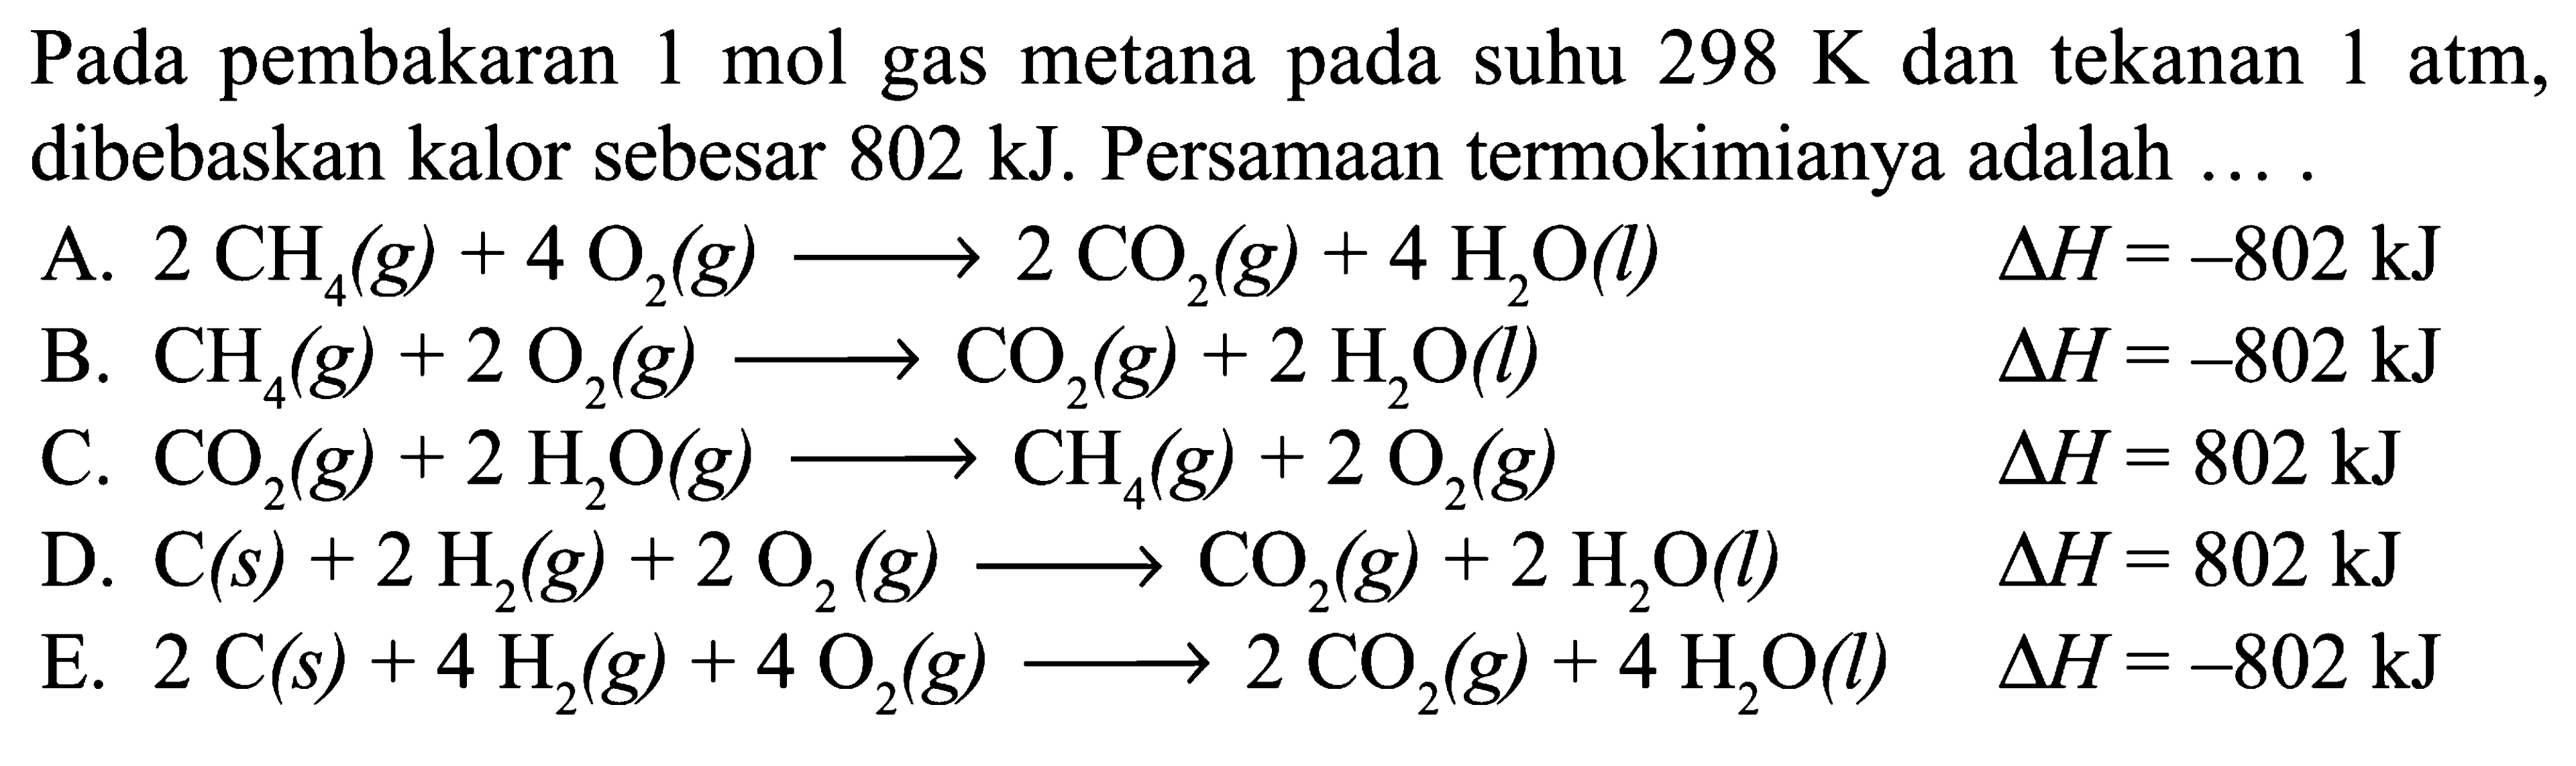 Pada pembakaran 1 mol gas metana pada suhu 298 K dan tekanan 1 atm, dibebaskan kalor sebesar 802 kJ. Persamaan termokimianya adalah ....